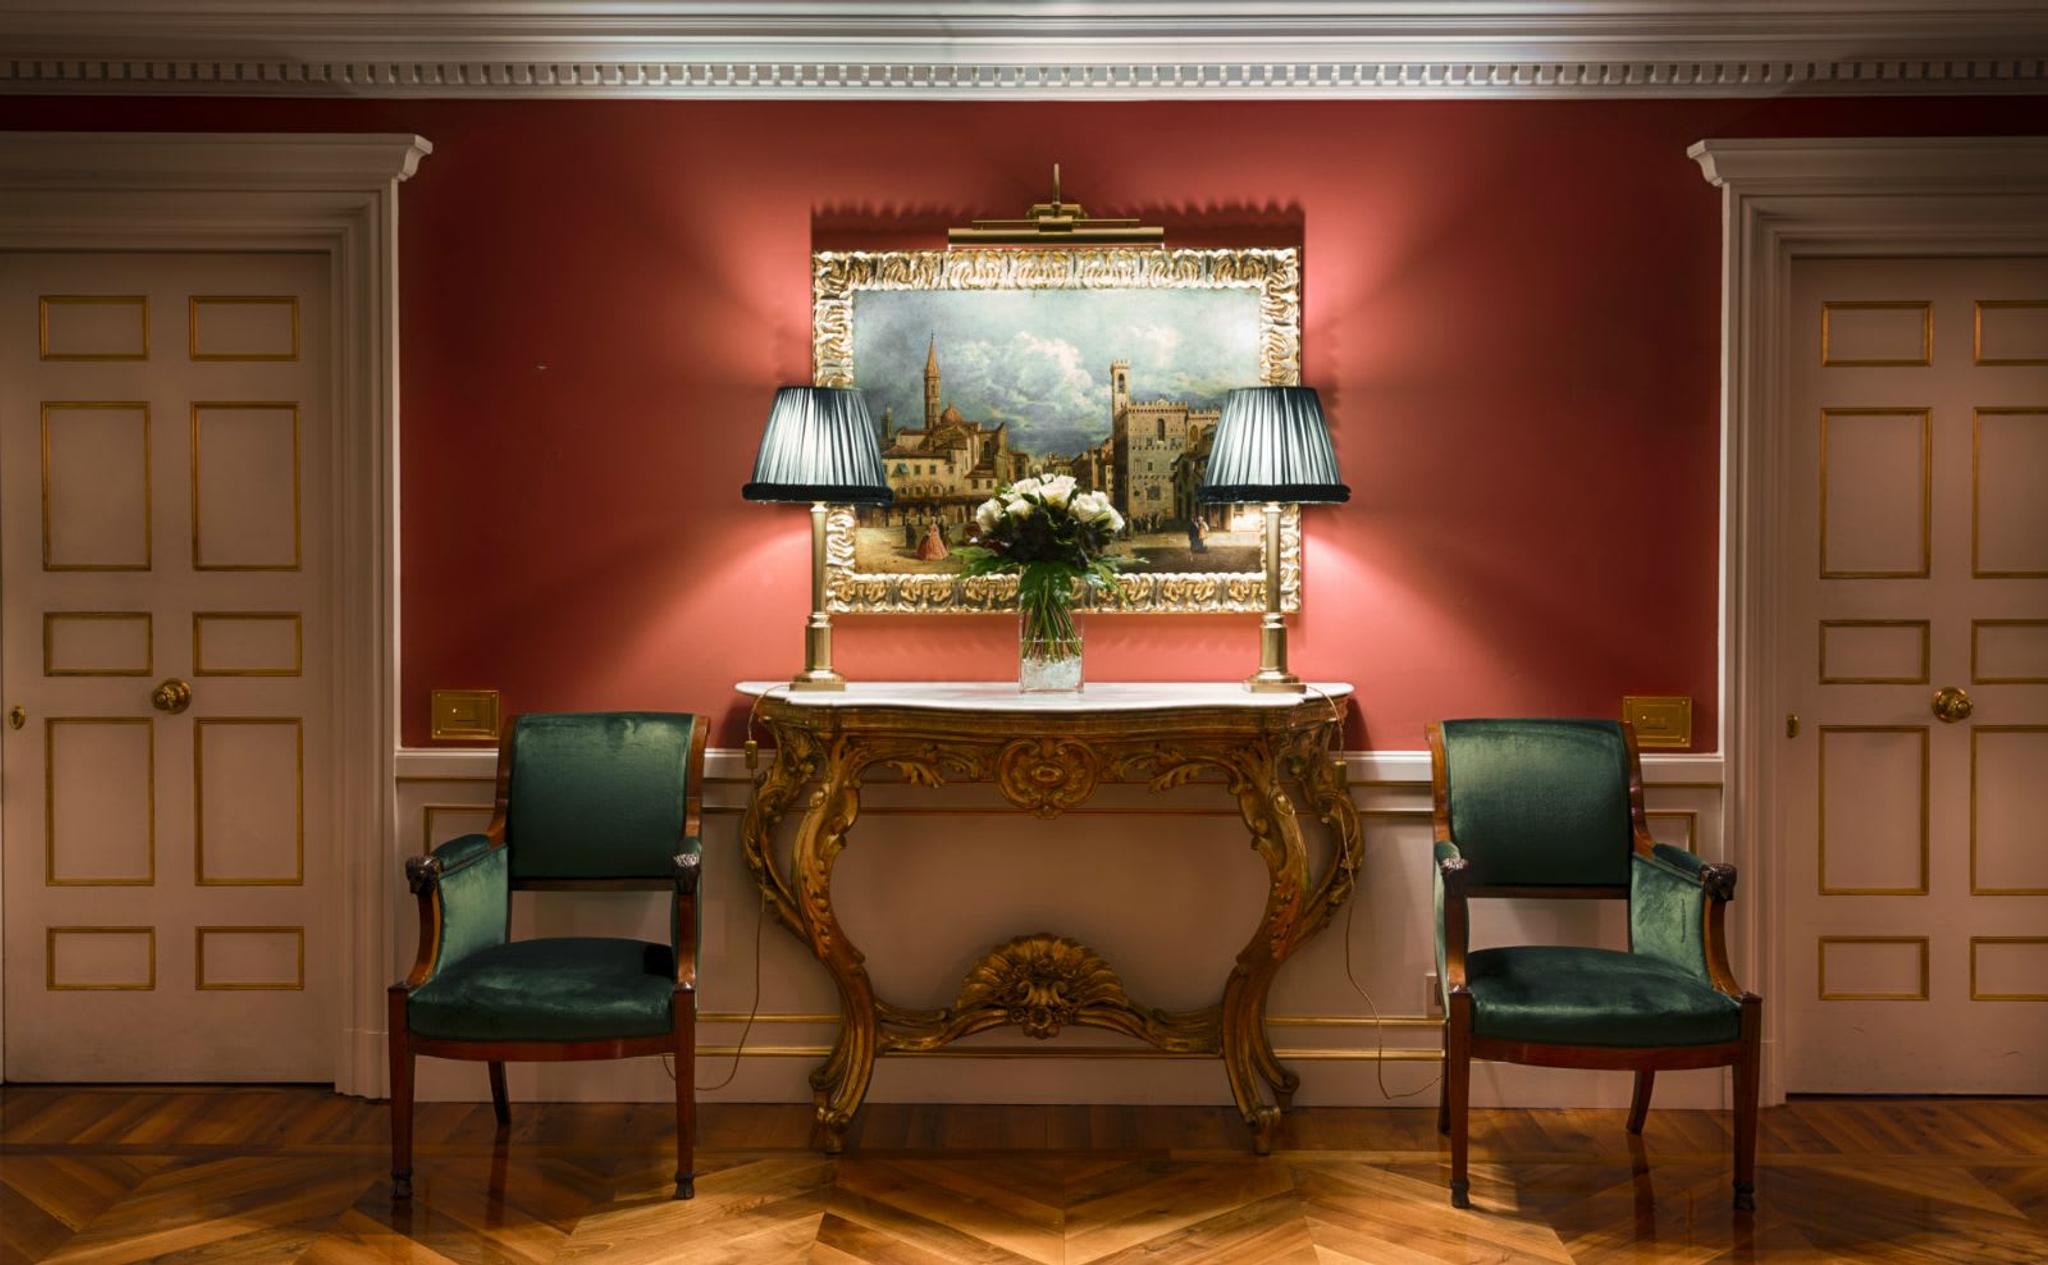 Console barocca, lampade da tavolo antiche e splendide poltrone Biedermeier rivestite di prezioso velluto verde scuro.